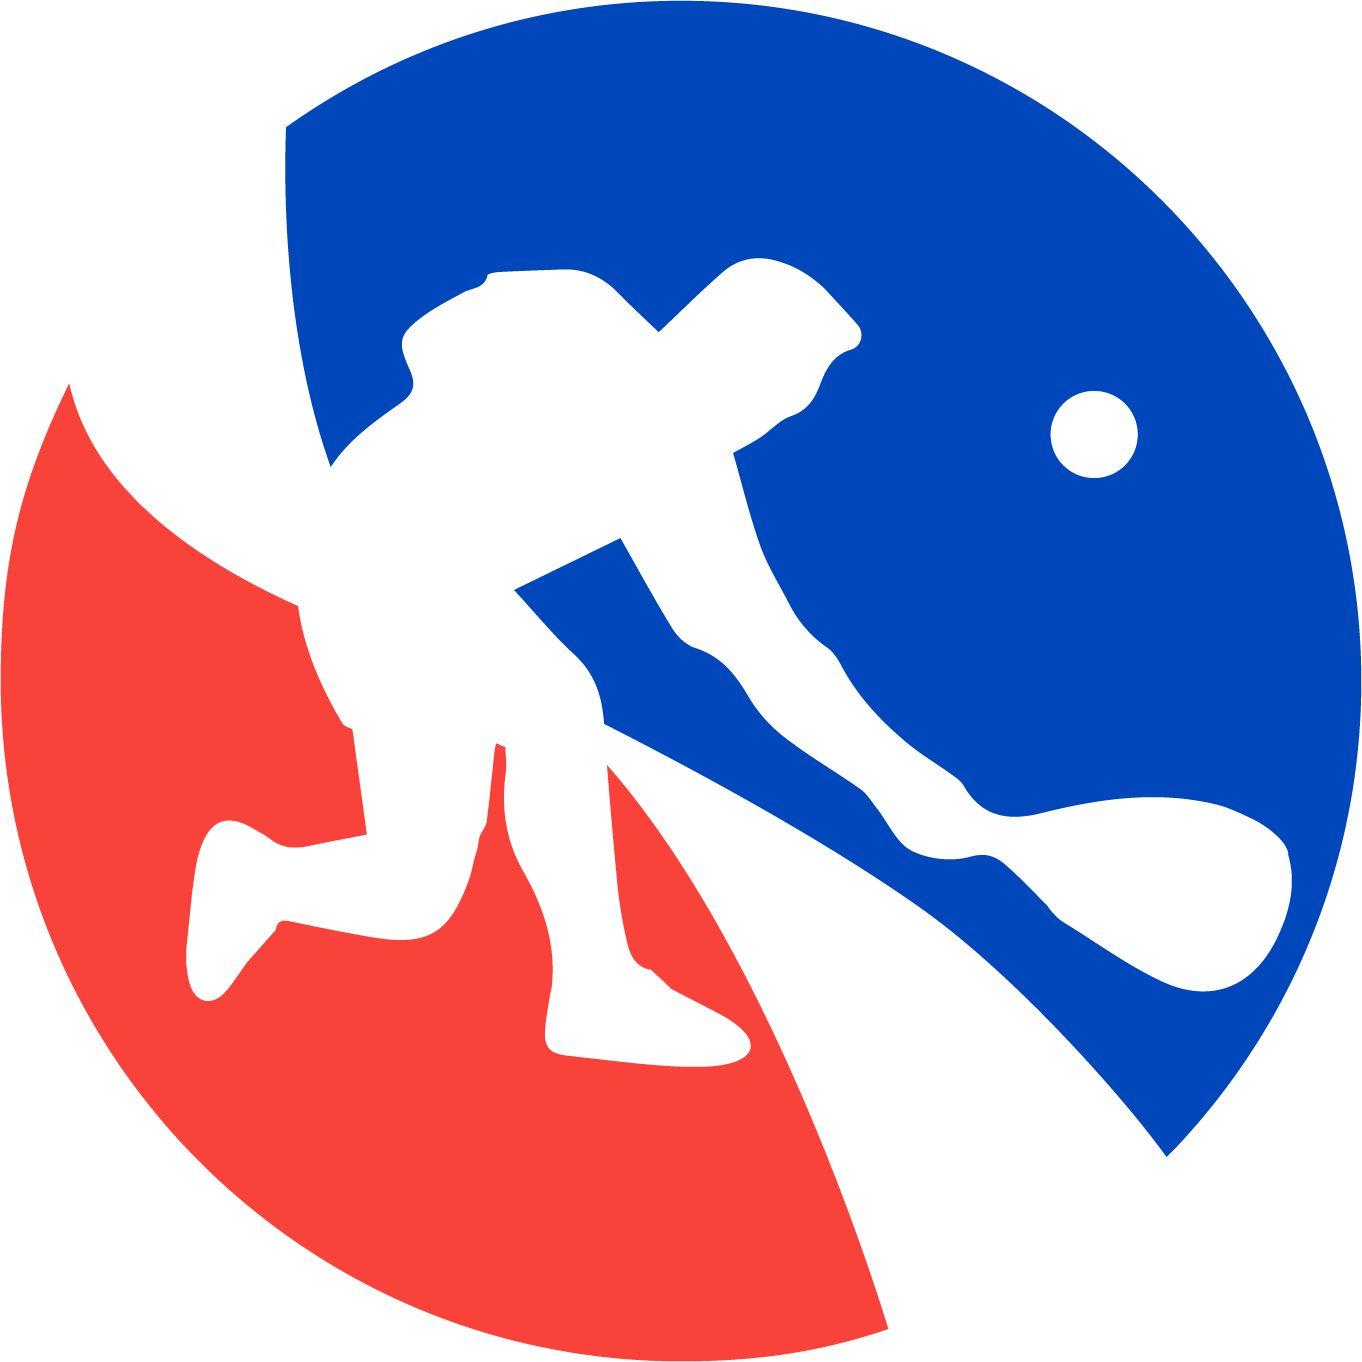 IRT Logo - File:IRT-Logo.jpg - Wikimedia Commons